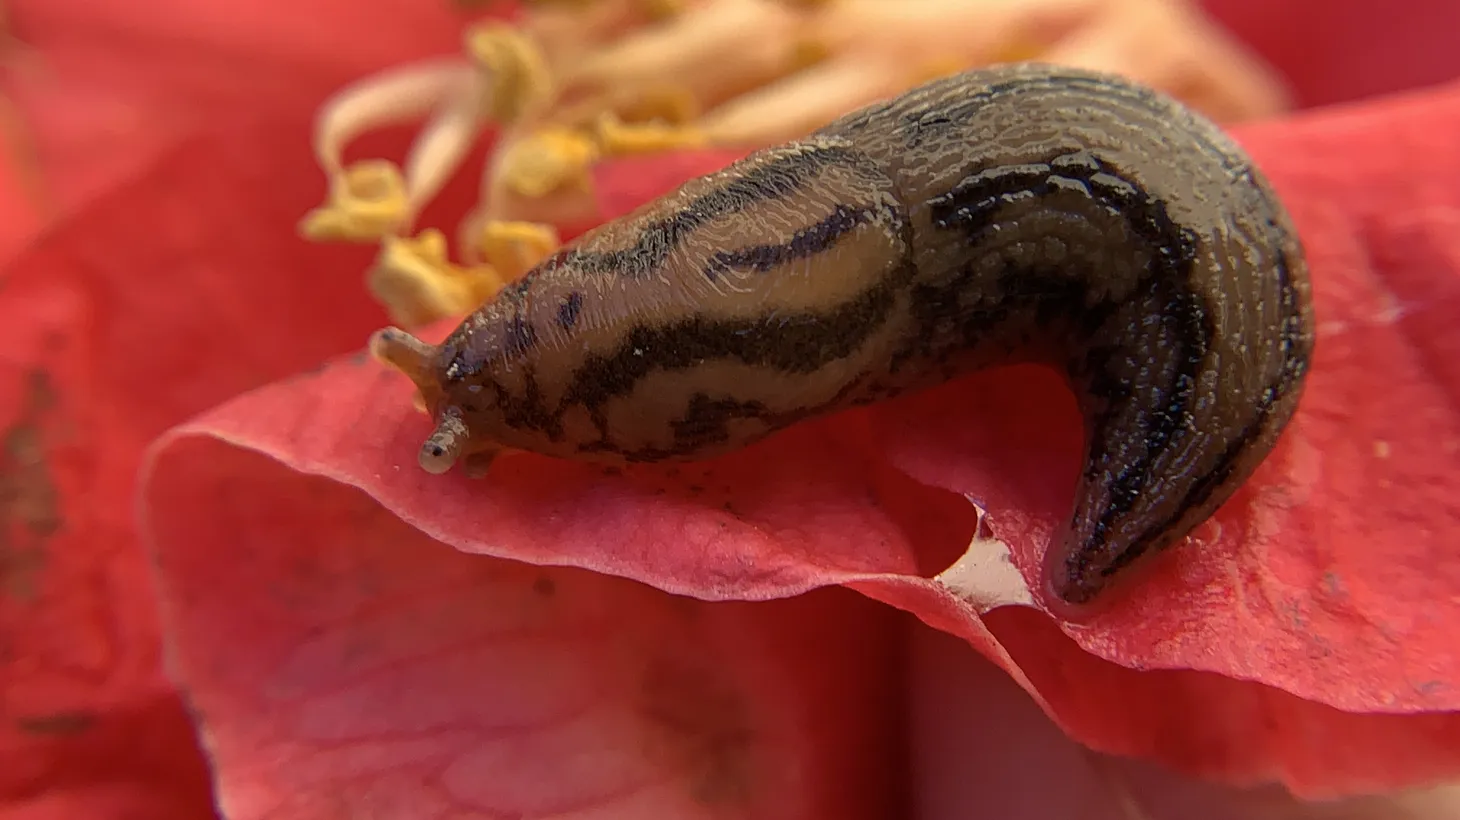 This Threeband slug was spotted in Mid City (near Pico and La Brea).